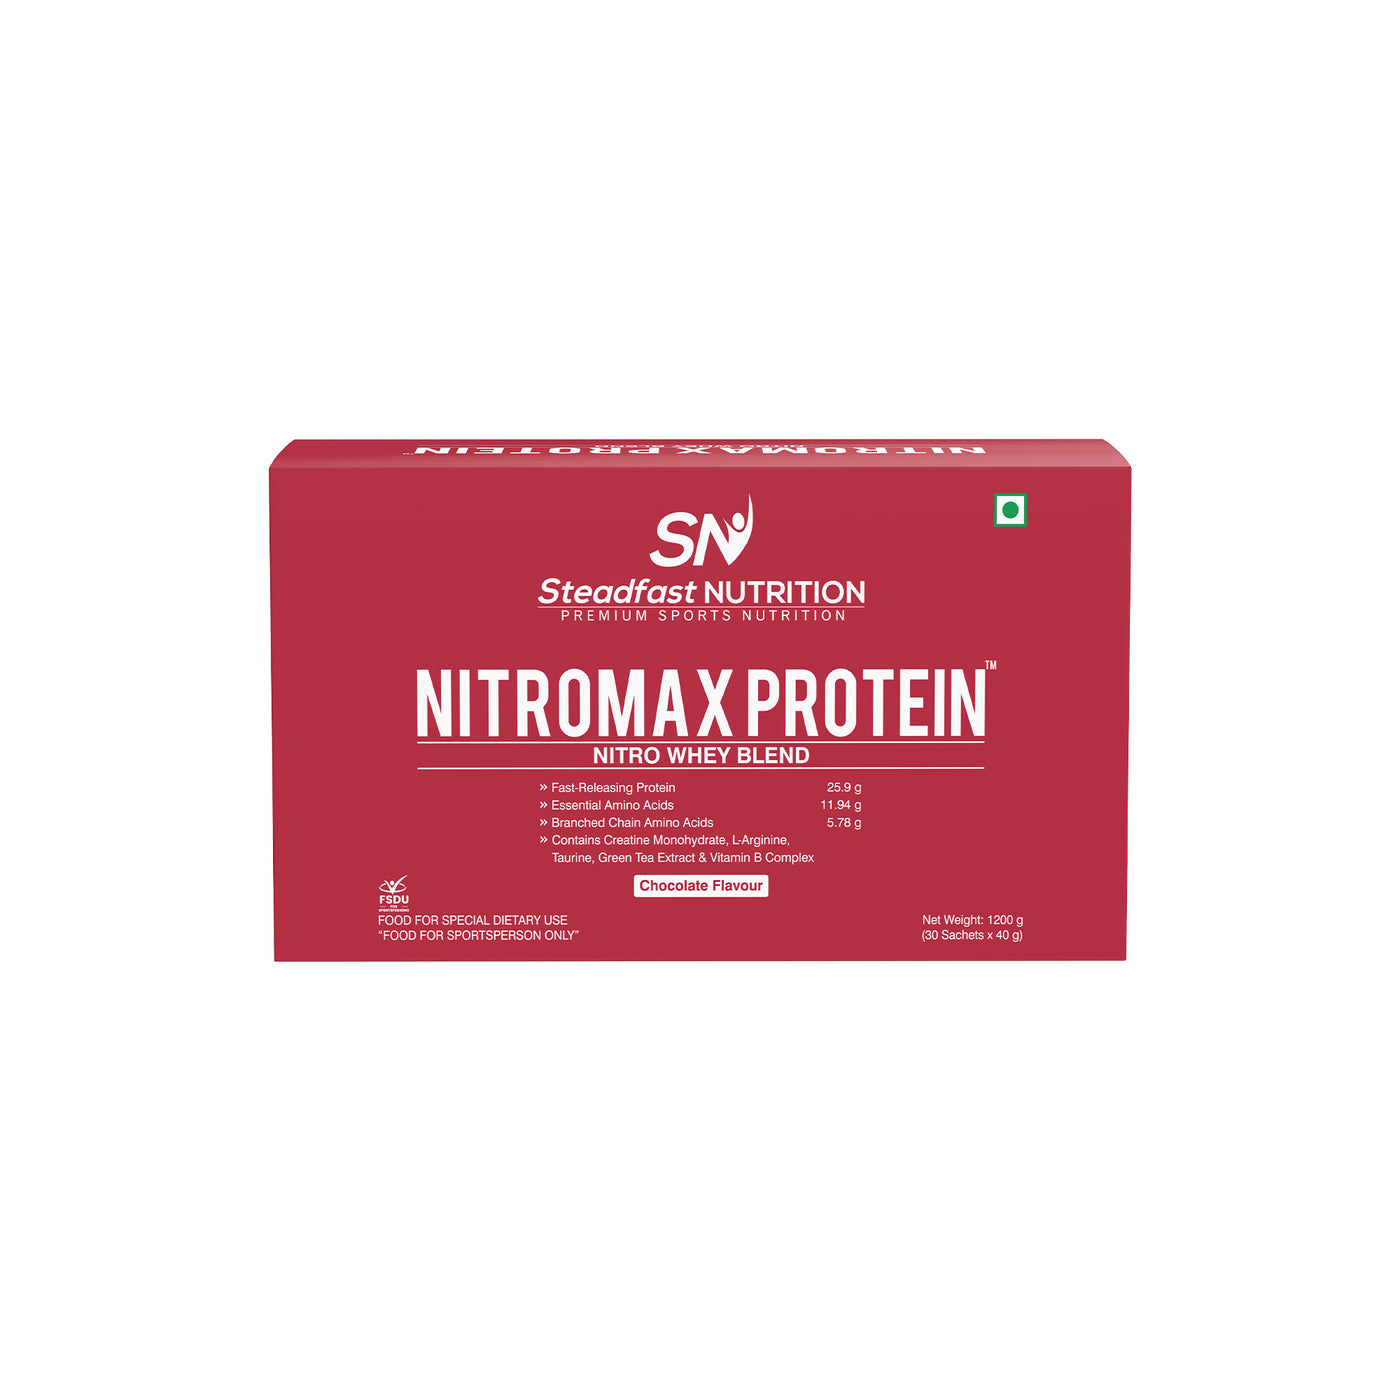 Nitromax Protein